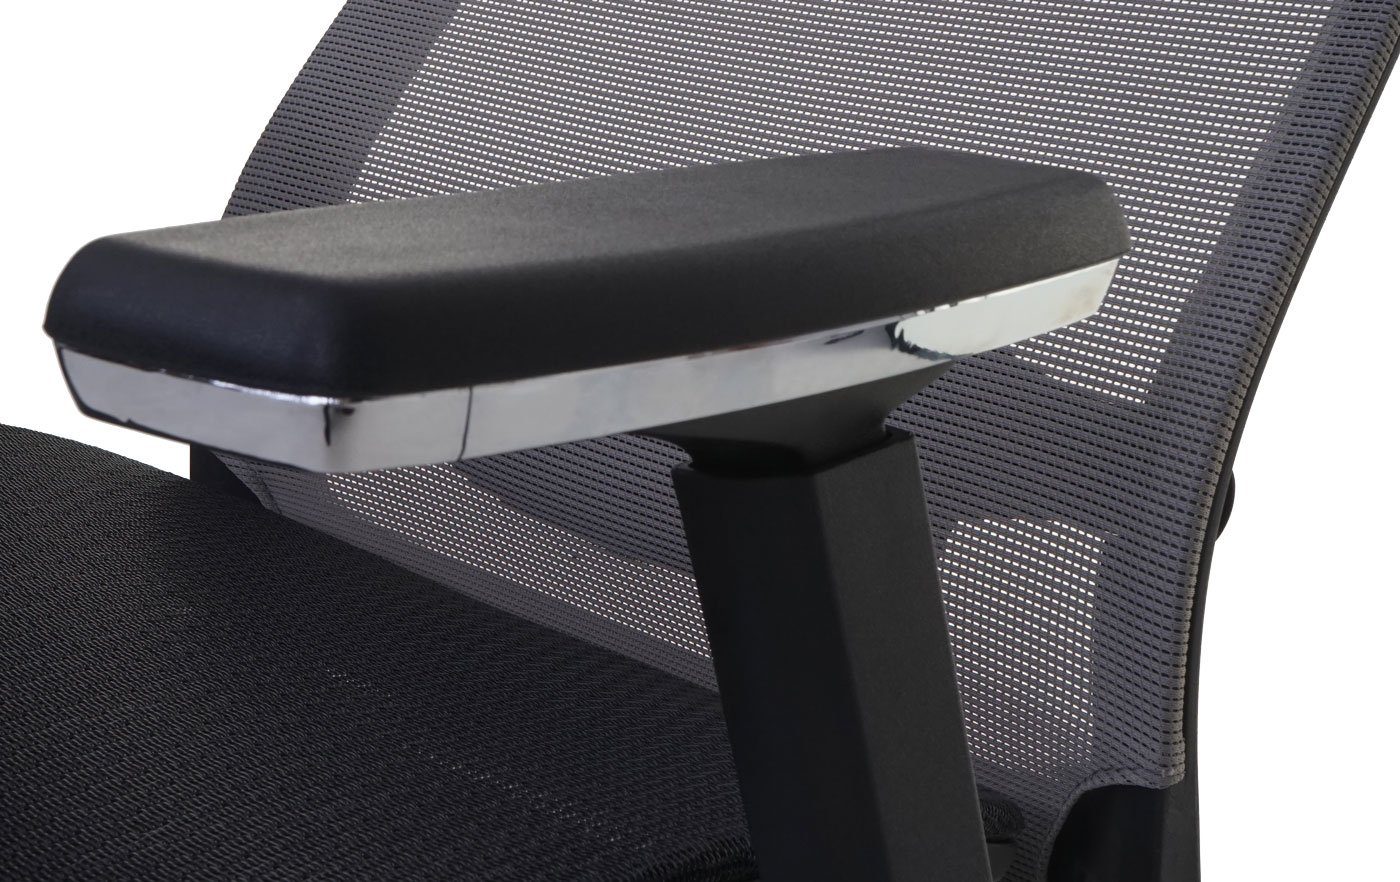 MCW Schreibtischstuhl MCW-A20, In der schwarz-grau anpassbar verstellbare Sitzfläche, Lendenwirbelstütze Tiefe